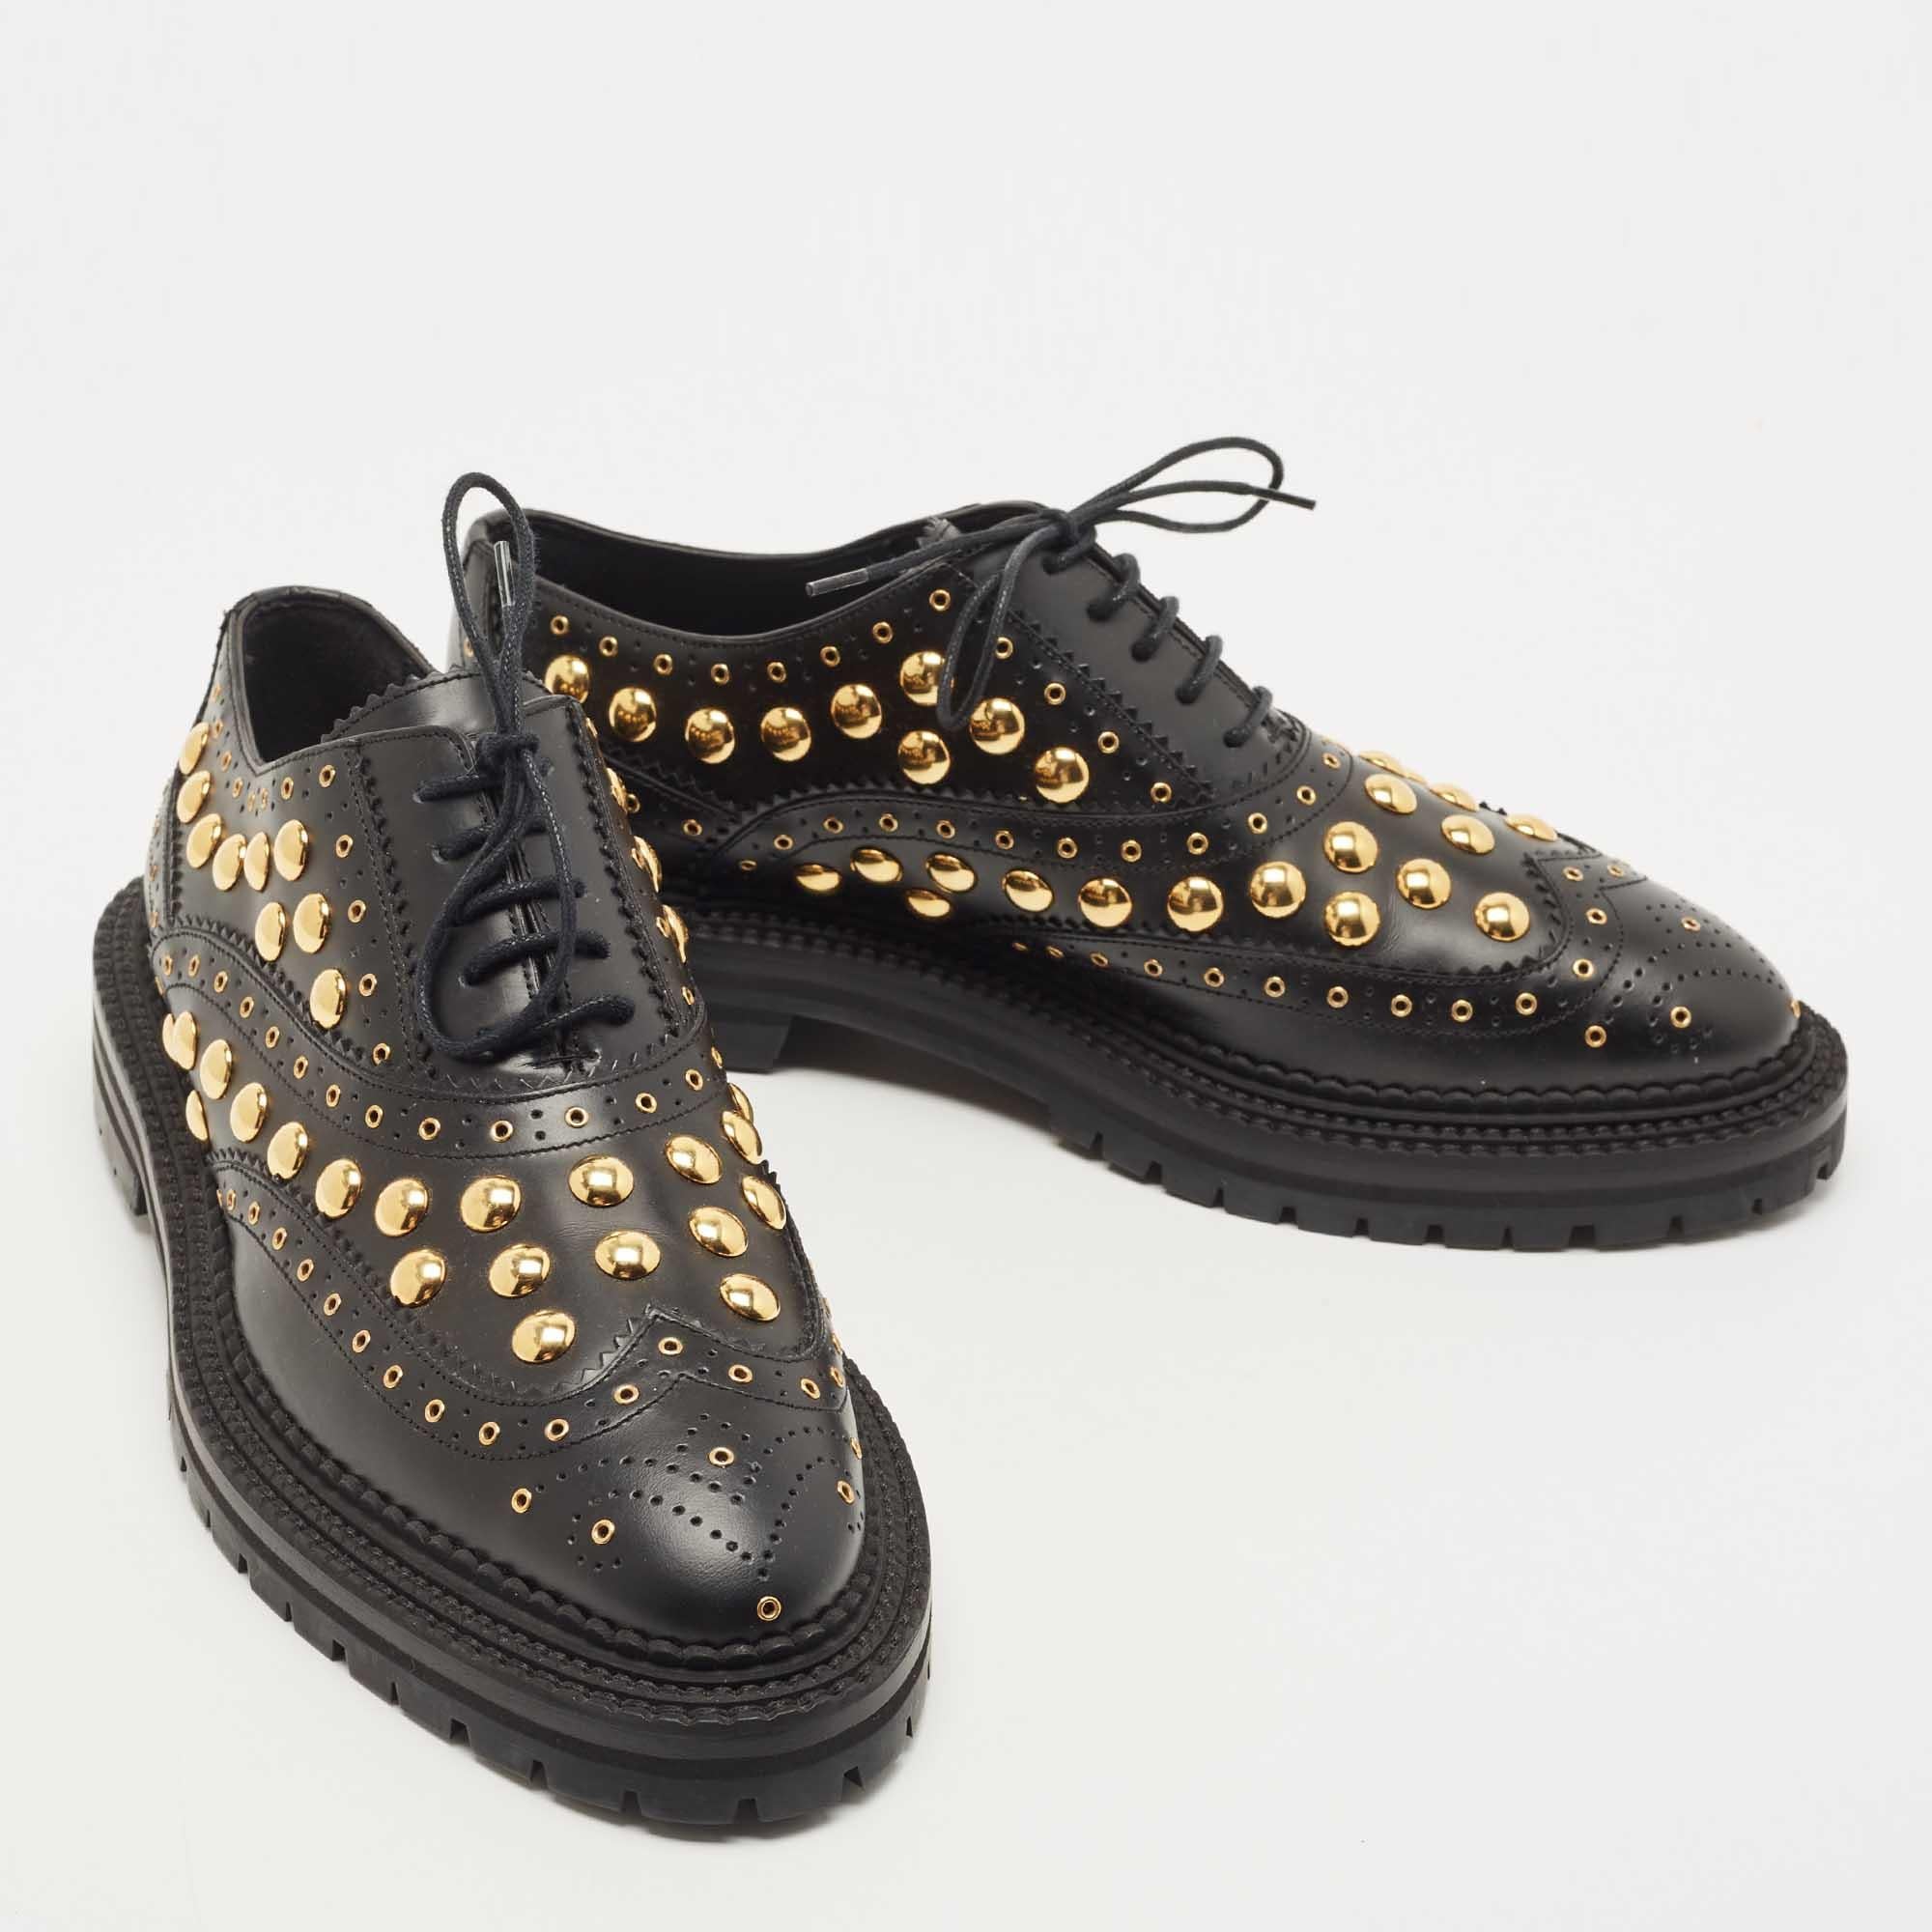 Mit diesen wundervollen Deardown Oxfords von Burberry wird Ihr Schuhspiel eine Stufe höher gesetzt. Die schwarzen Oxfords sind aus Leder gefertigt und weisen ein Brogue-Design auf. Sie haben eine runde Zehenpartie, Schnürsenkel auf dem Vorderblatt